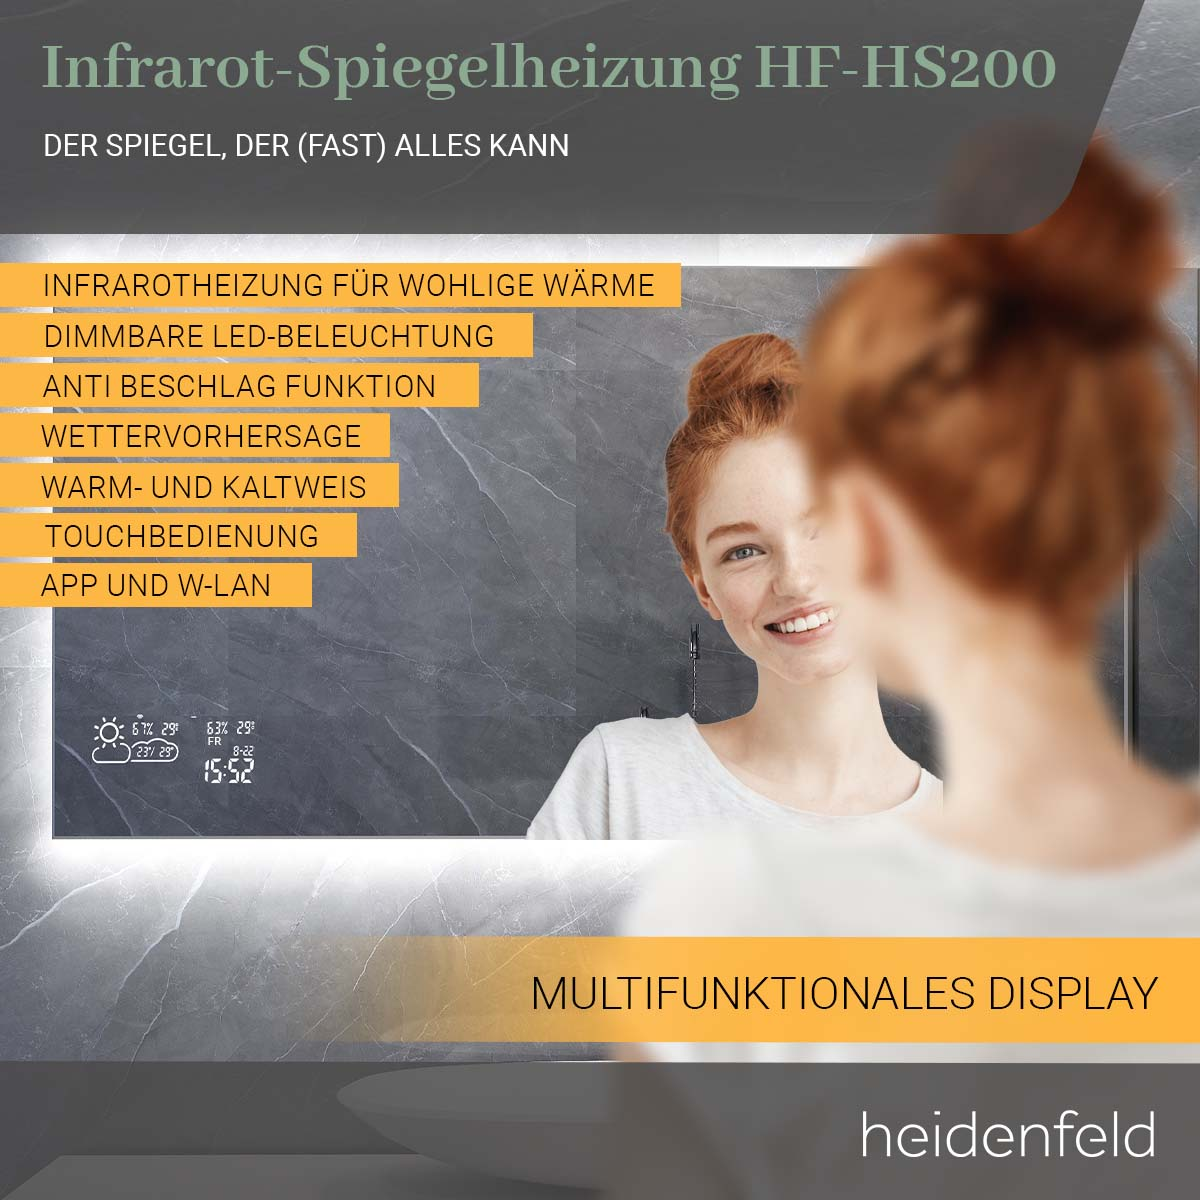 HF-HS200 Spiegel HEIDENFELD Smart